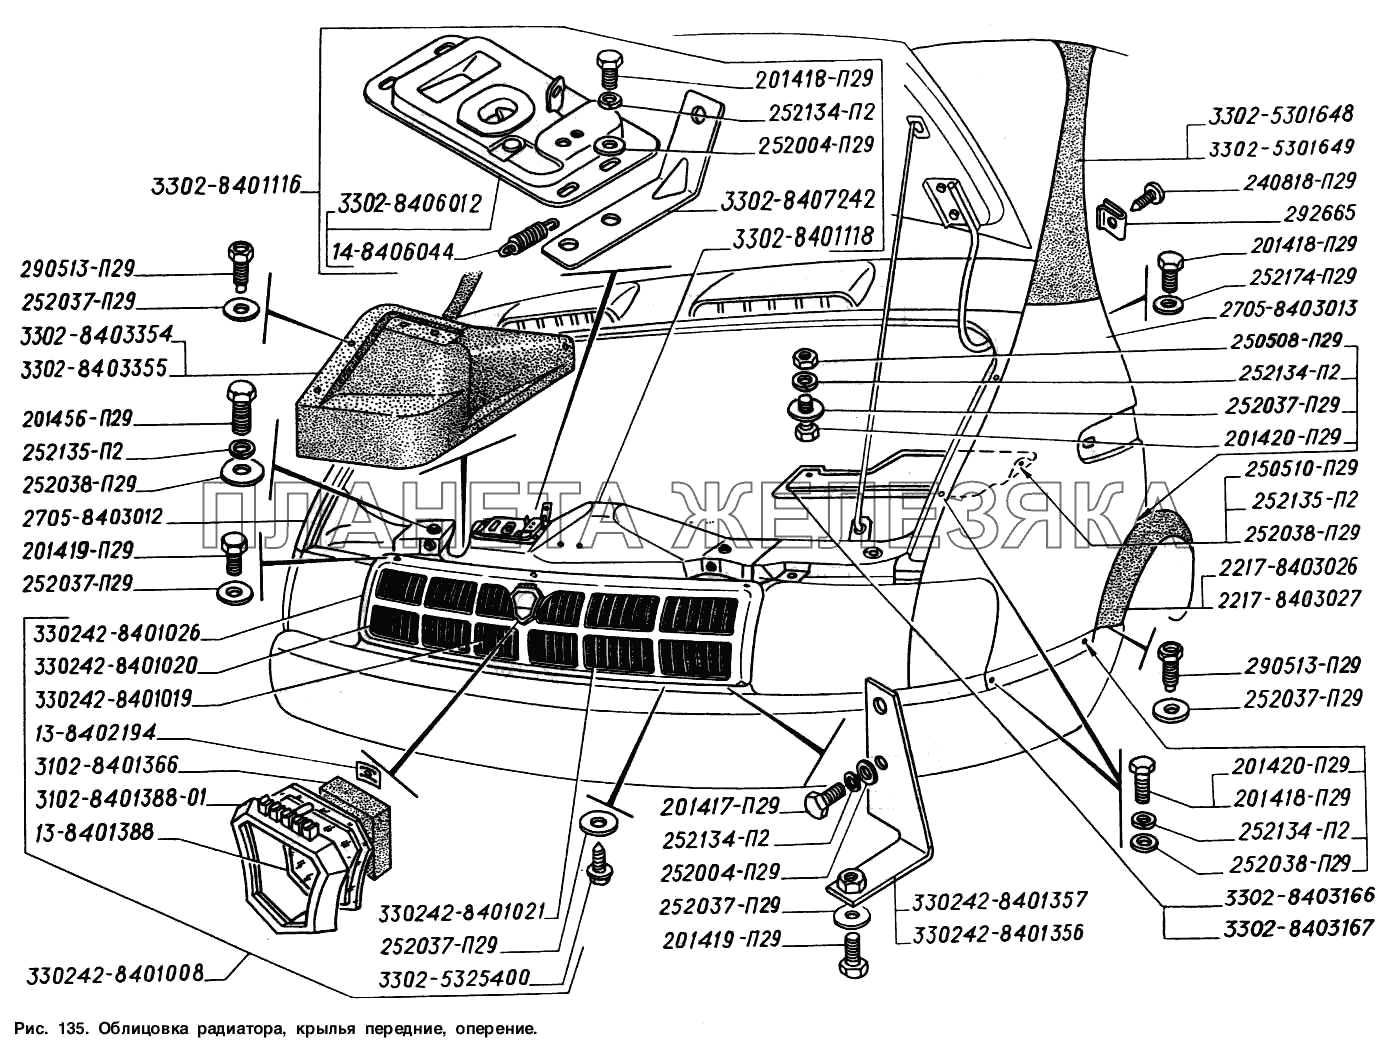 Облицовка радиатора, крылья передние, оперение ГАЗ-2217 (Соболь)